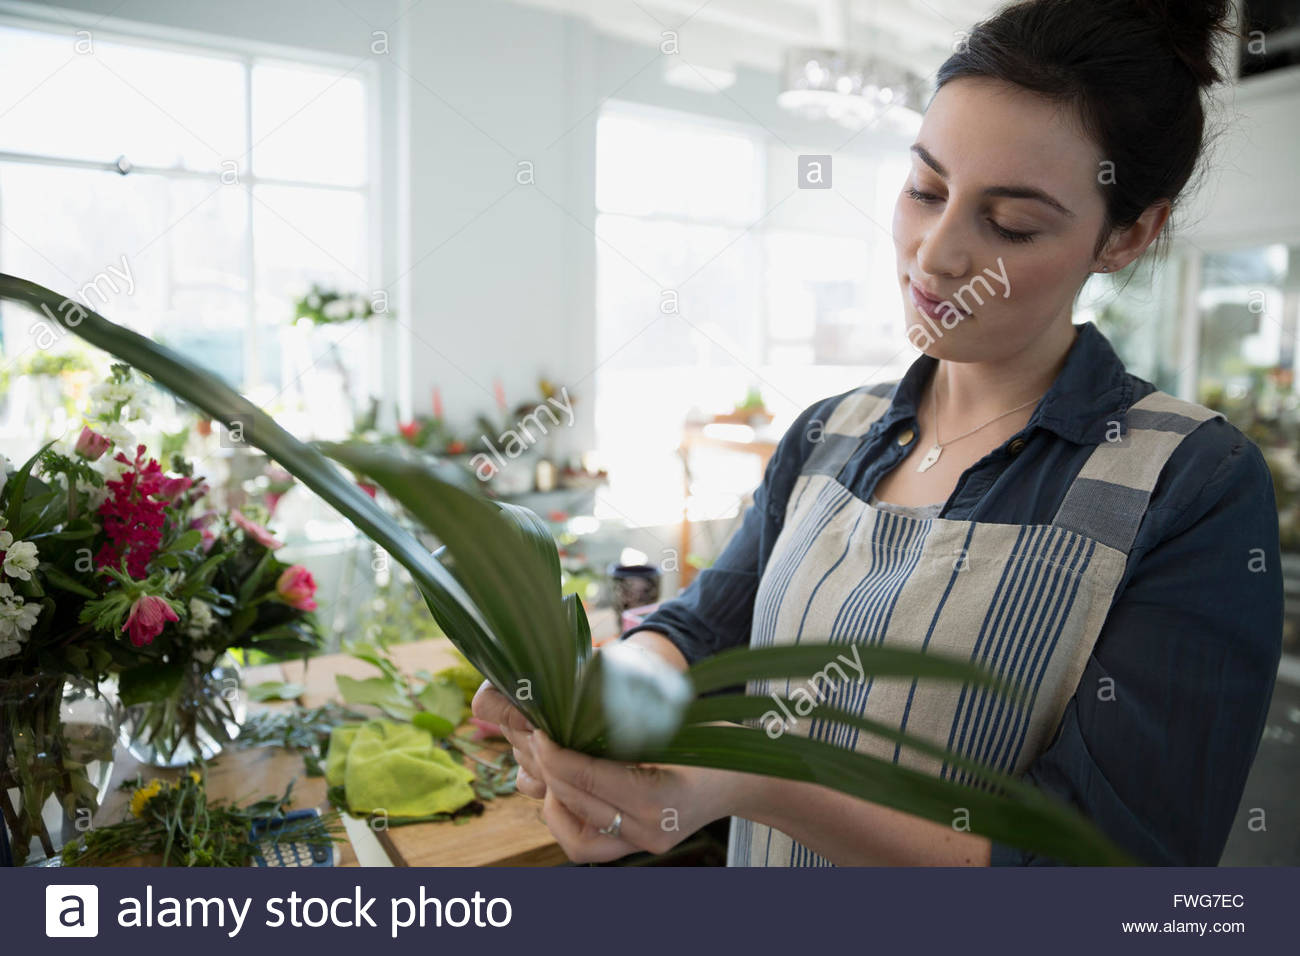 Florist arranging bouquet in flower shop Stock Photo